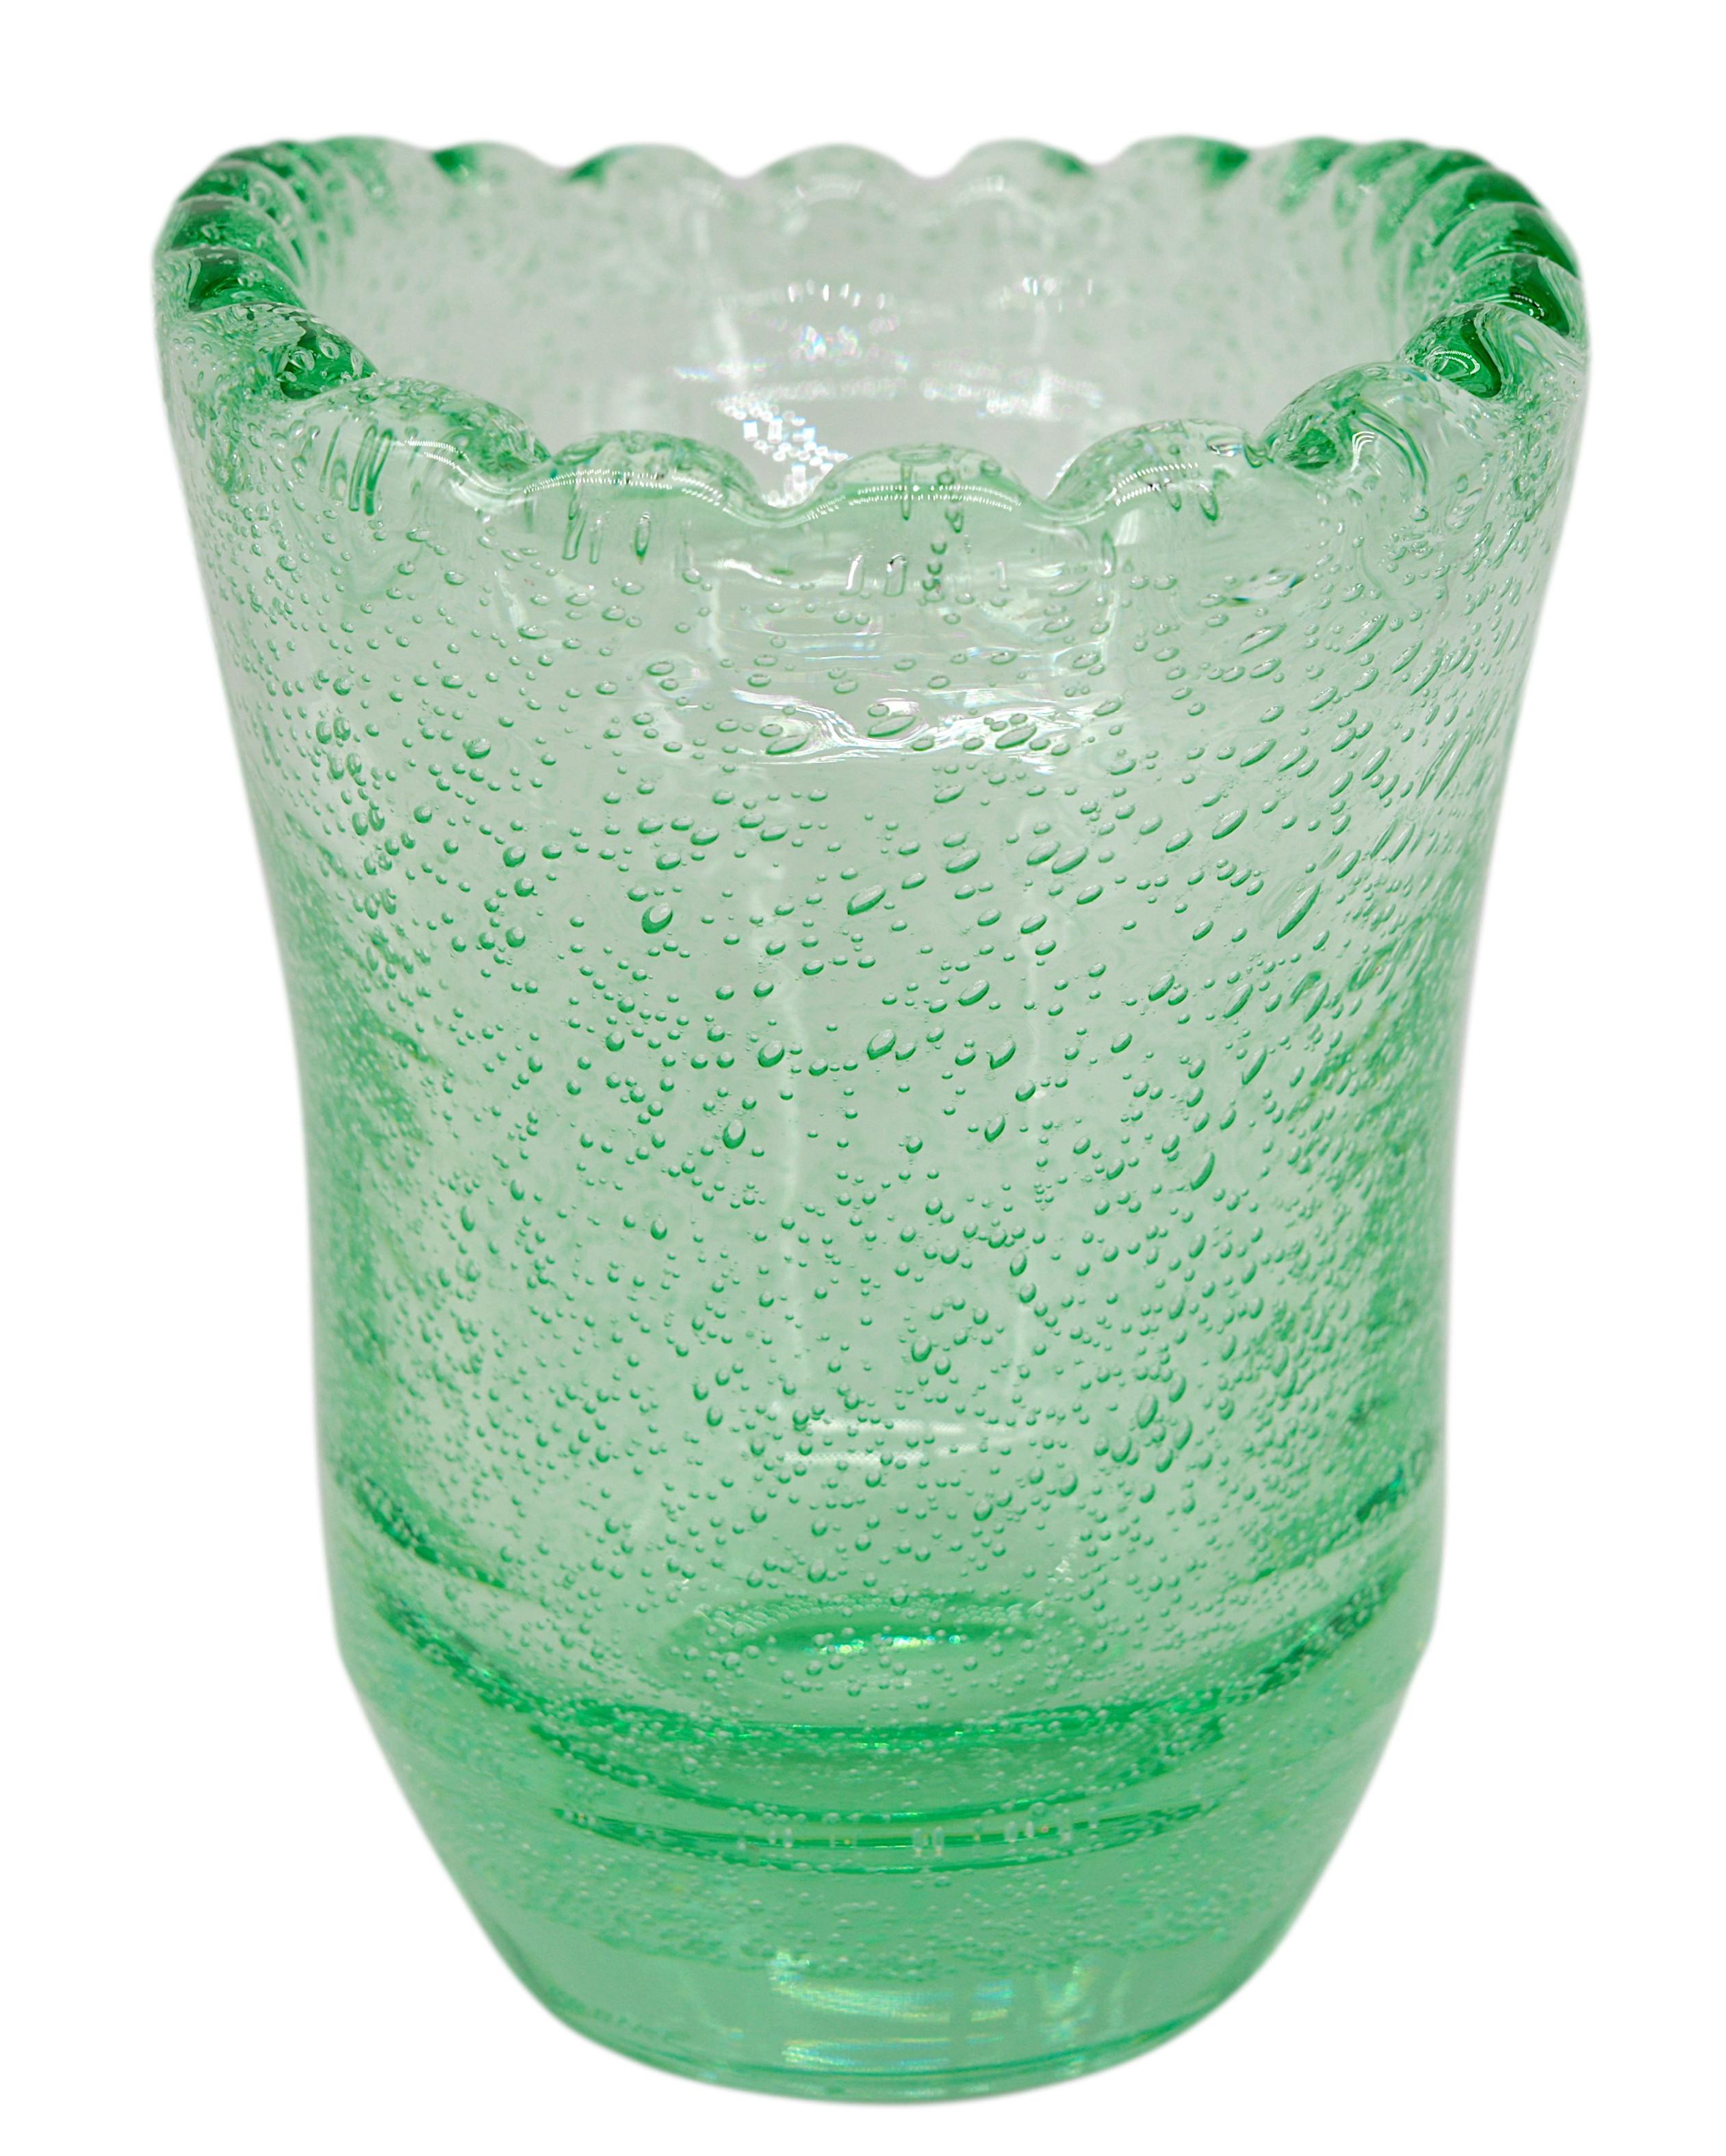 Vase en verre Art déco de Daum (Nancy), France, années 1930. Vase en verre épais soufflé et bullé. Couleur : vert. Mesures : Hauteur : 19 cm, Largeur : 22 cm, Profondeur : 14,5 cm. Signé 